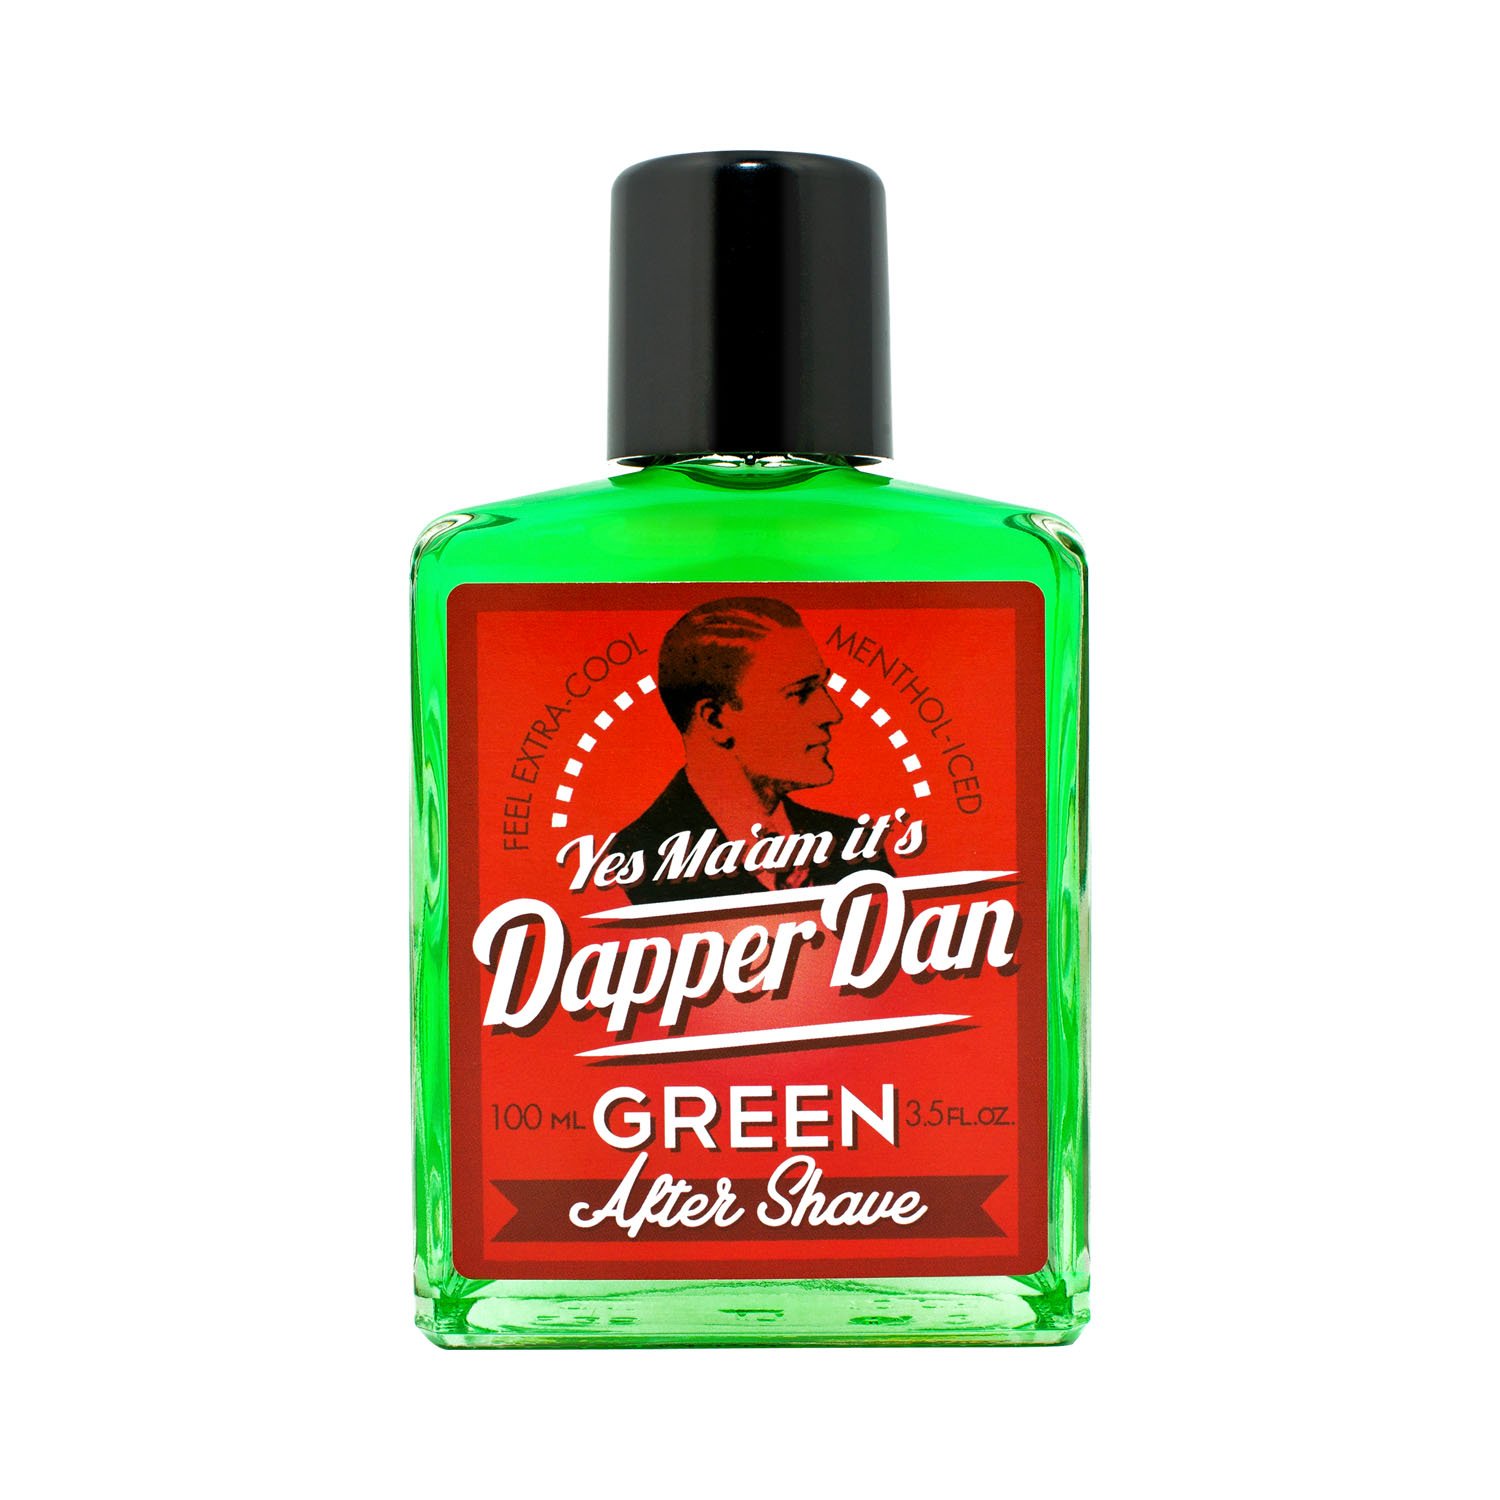 Dapper Dan - After Shave Green